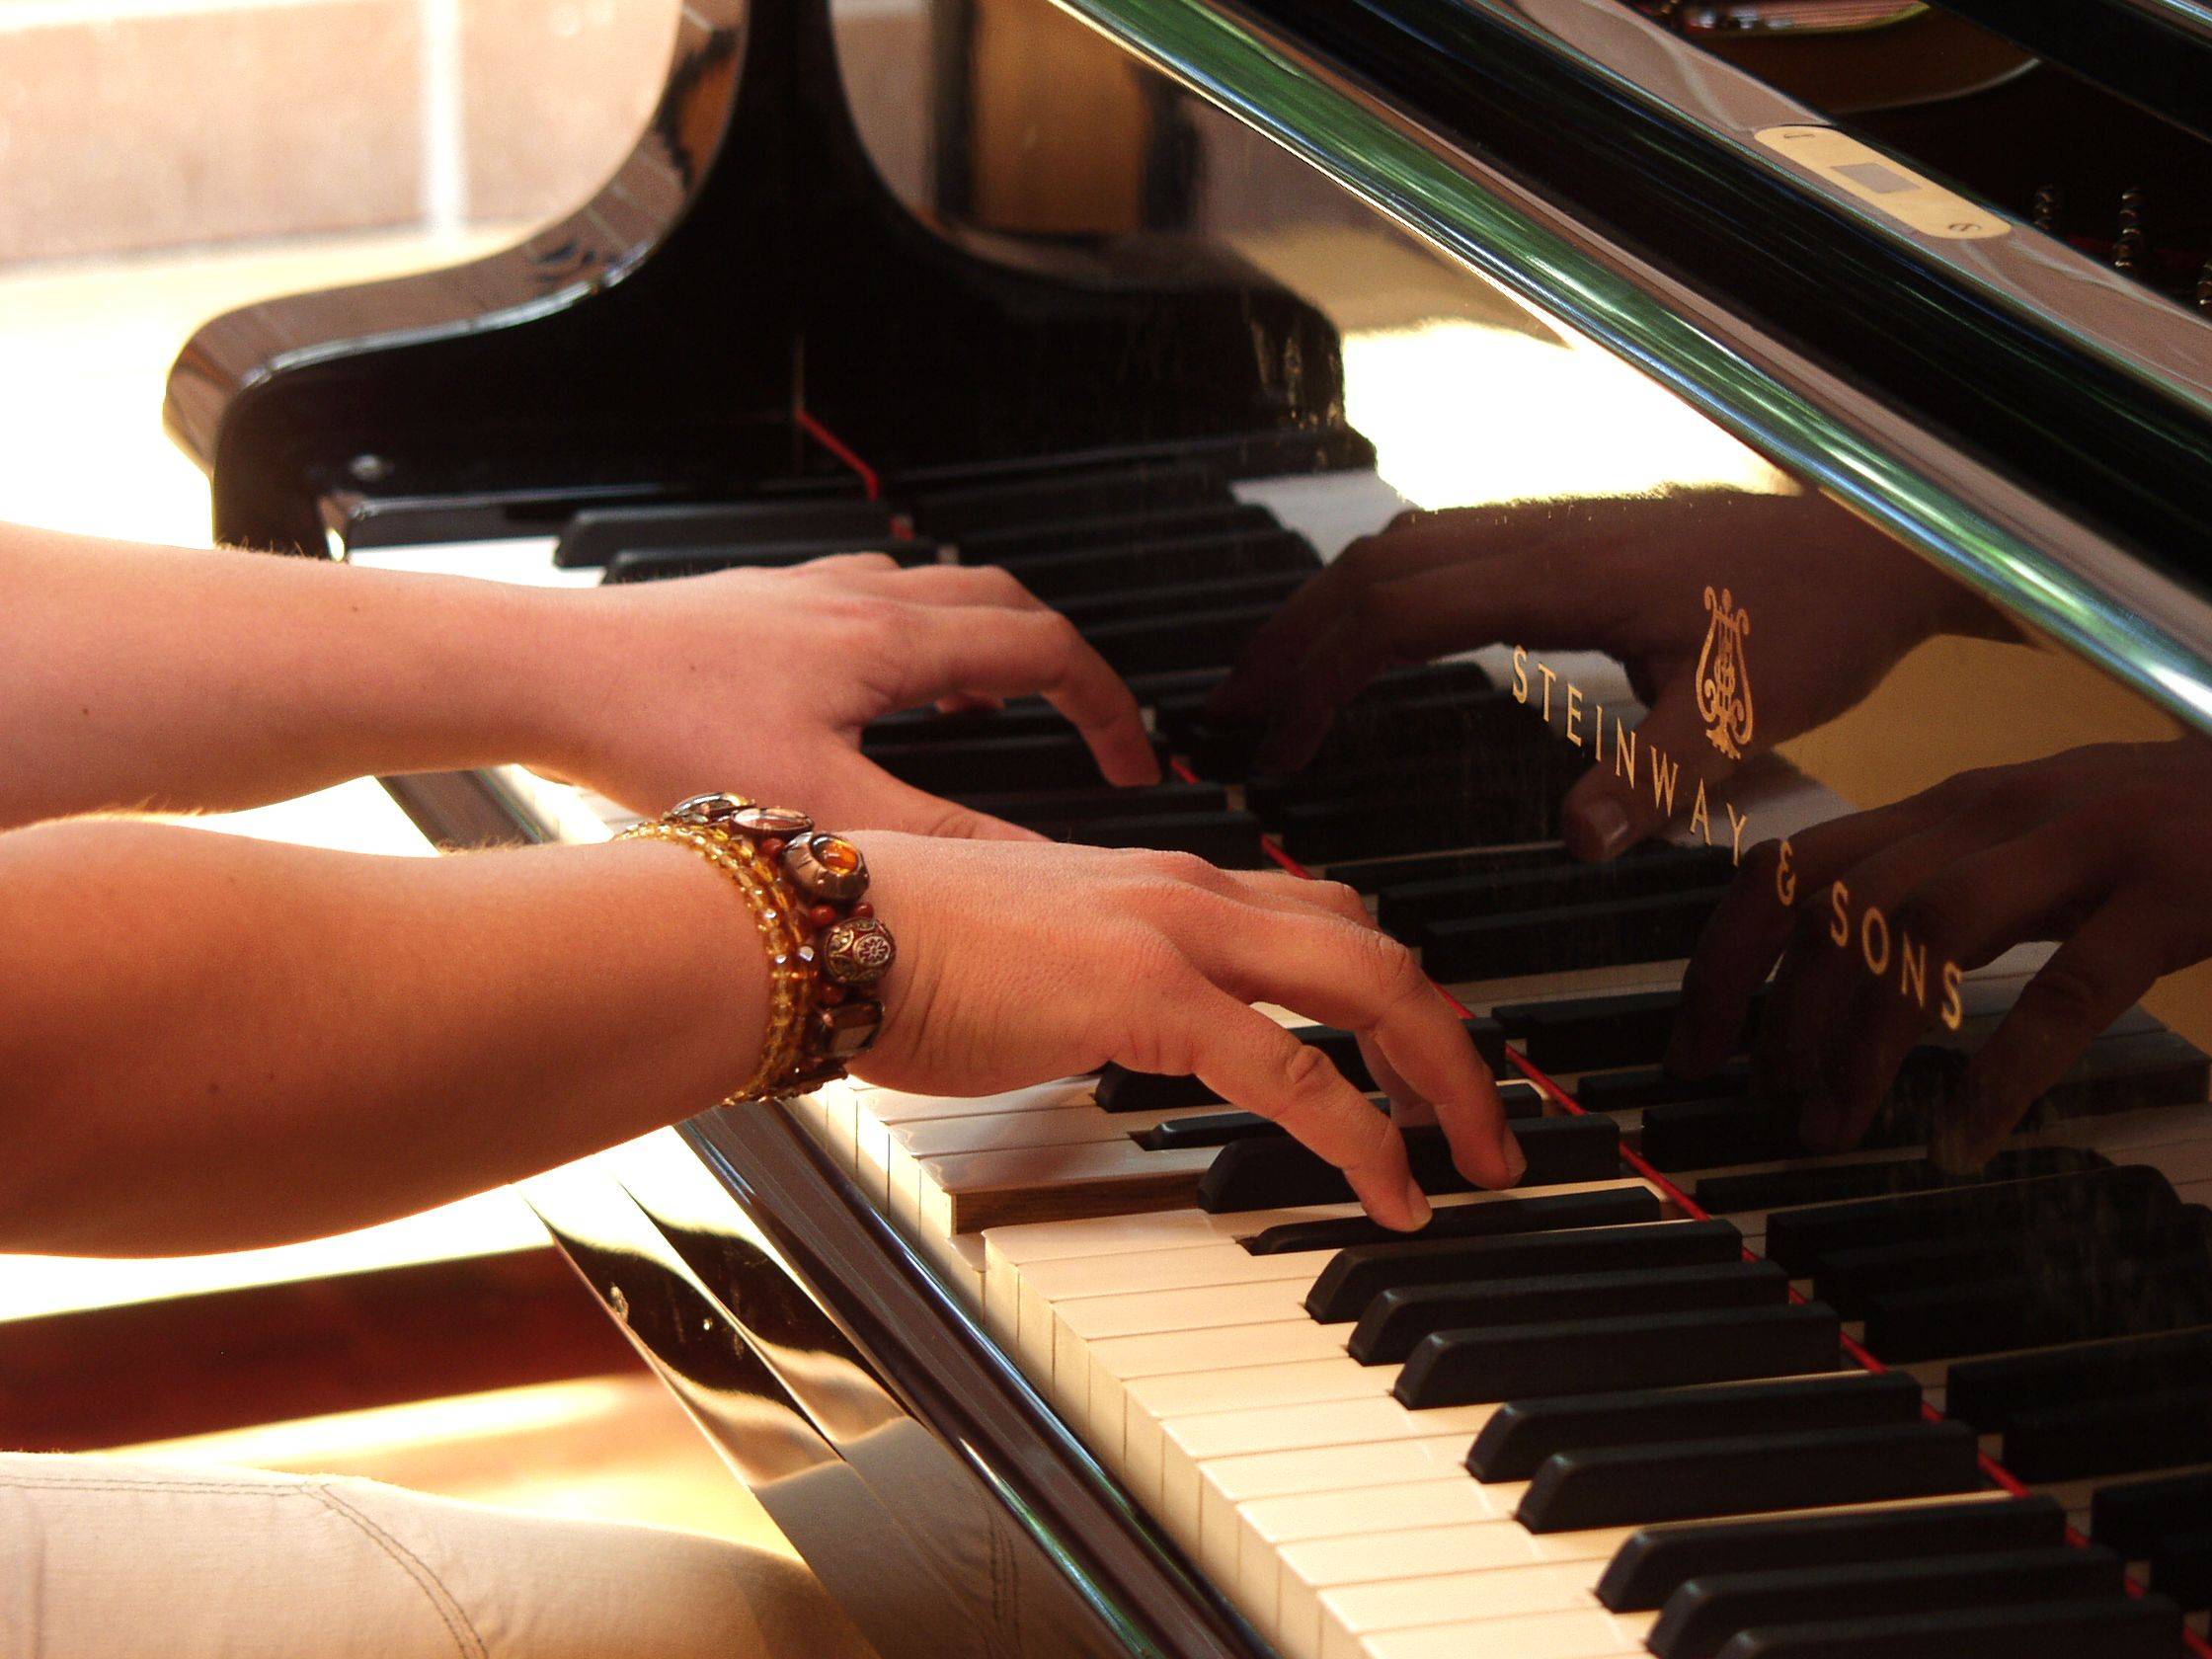 
    
            
                    Klavierspielende Hände
                
        
